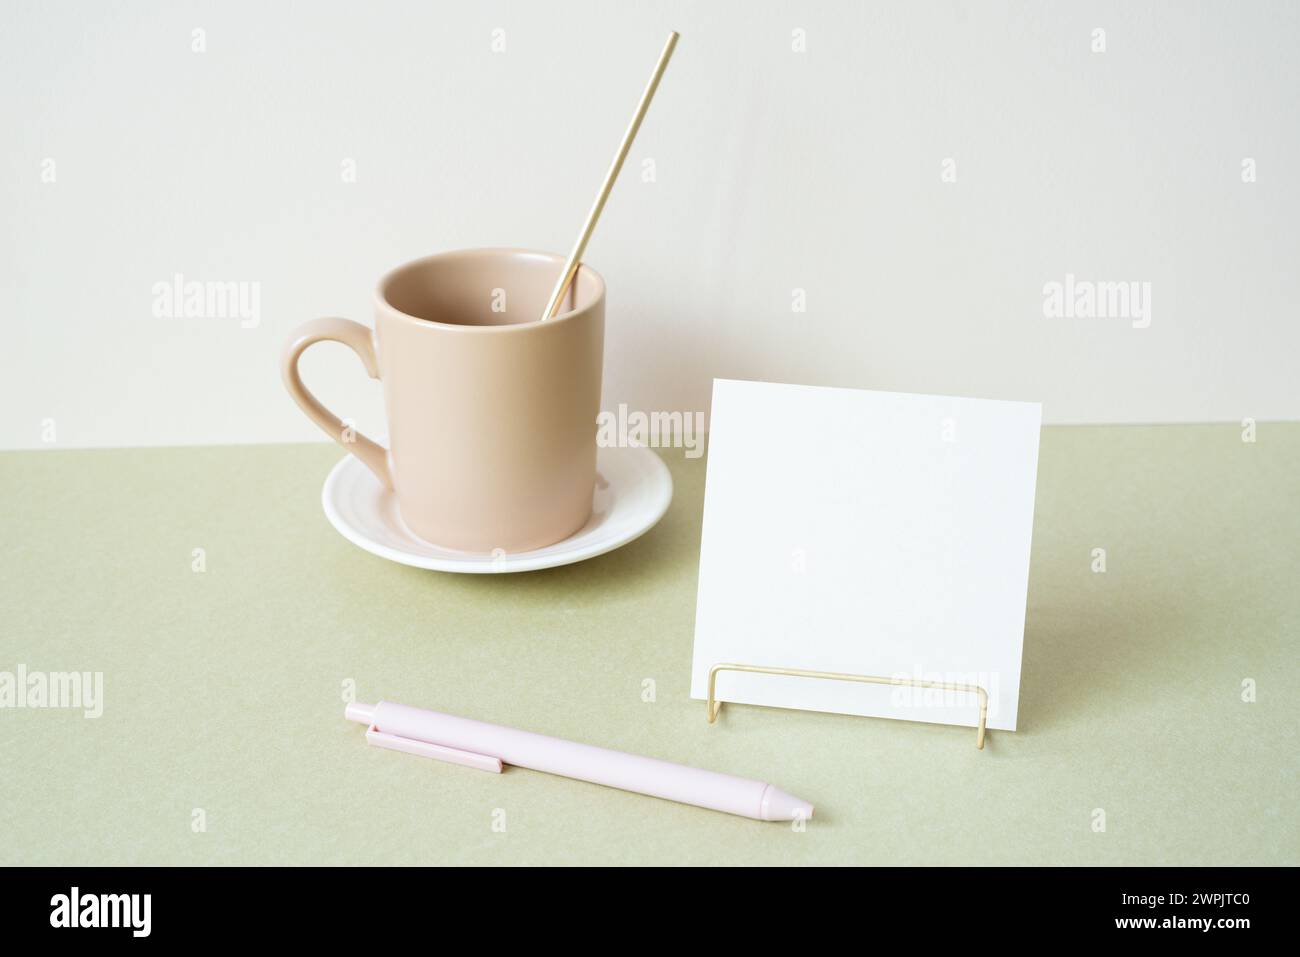 Blocco note vuoto con supporto, penna e tazza sulla scrivania. sfondo bianco avorio. cancelleria per ufficio Foto Stock